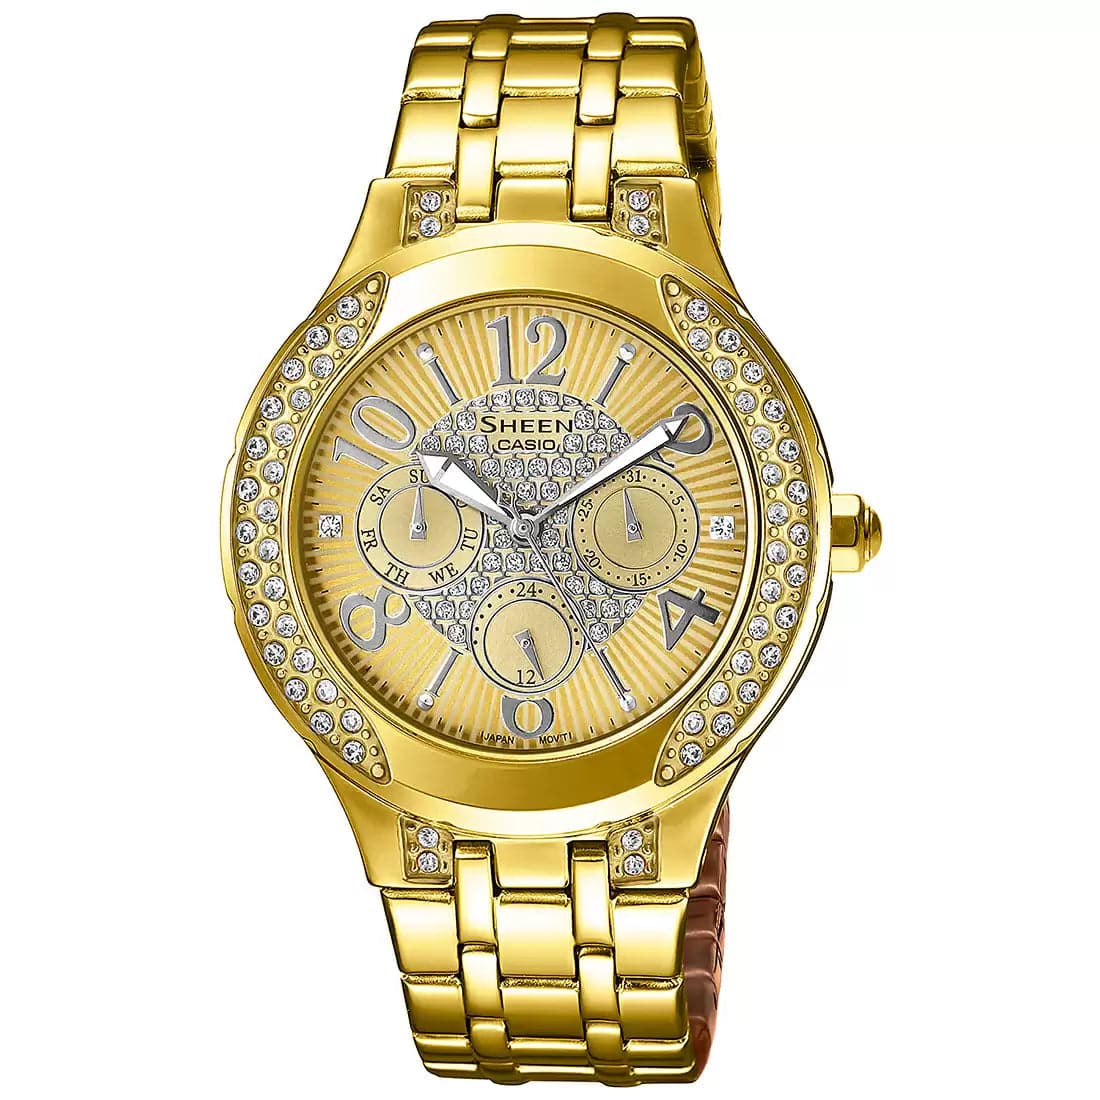 Casio Sheen Gold Women's Watch - Kamal Watch Company